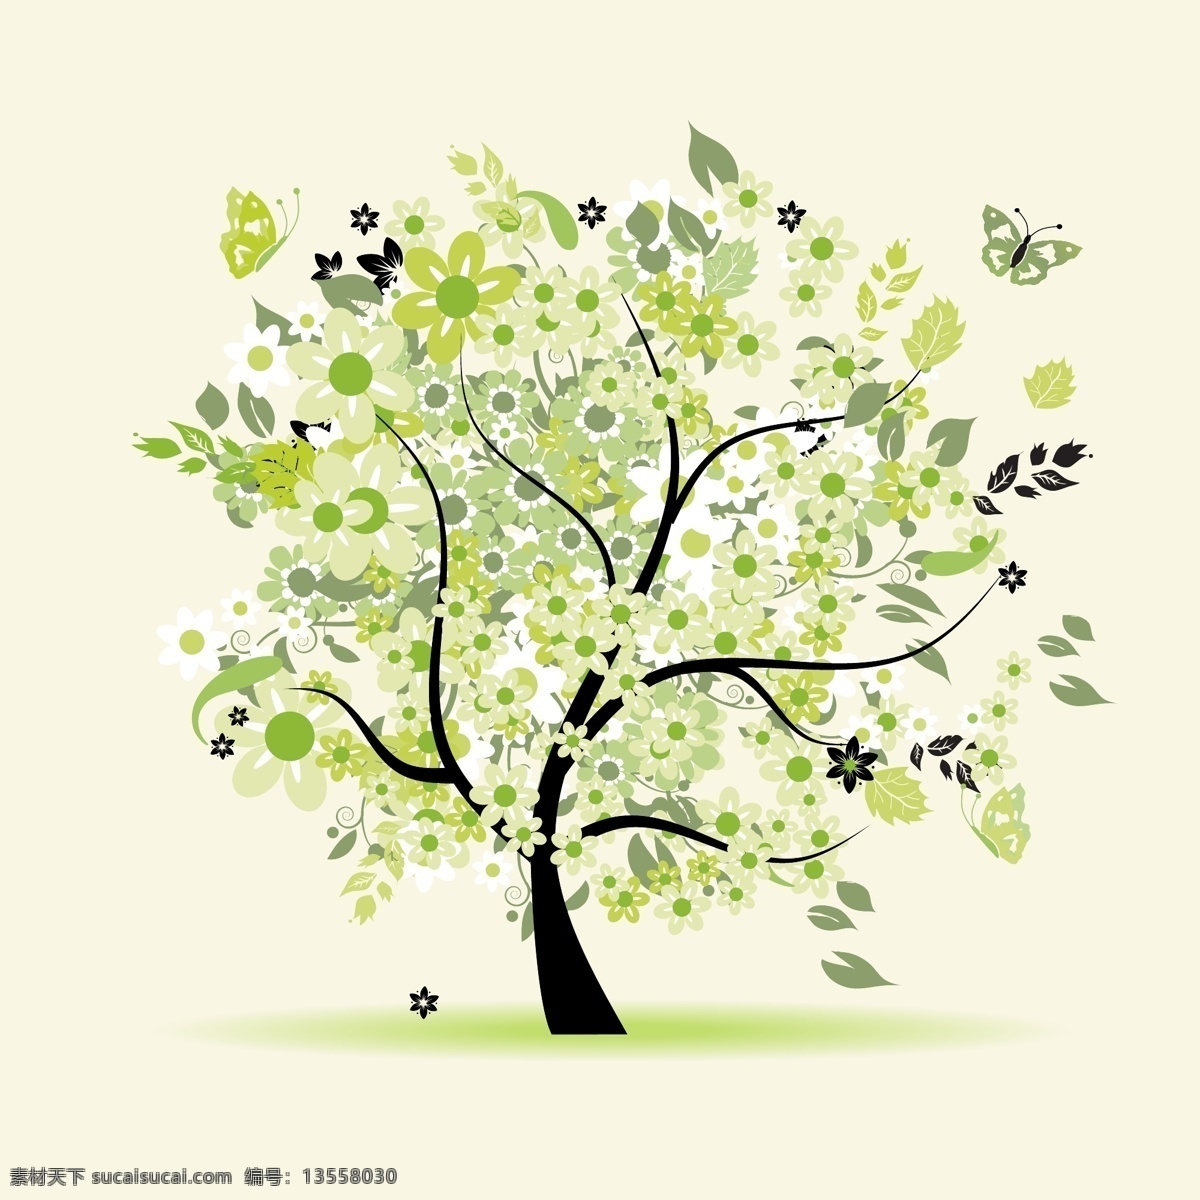 绿色树木素材 抽象树 时尚花纹 时尚潮流 树 潮流花纹 插画树木 卡通树木 花草树木 生物世界 矢量素材 白色